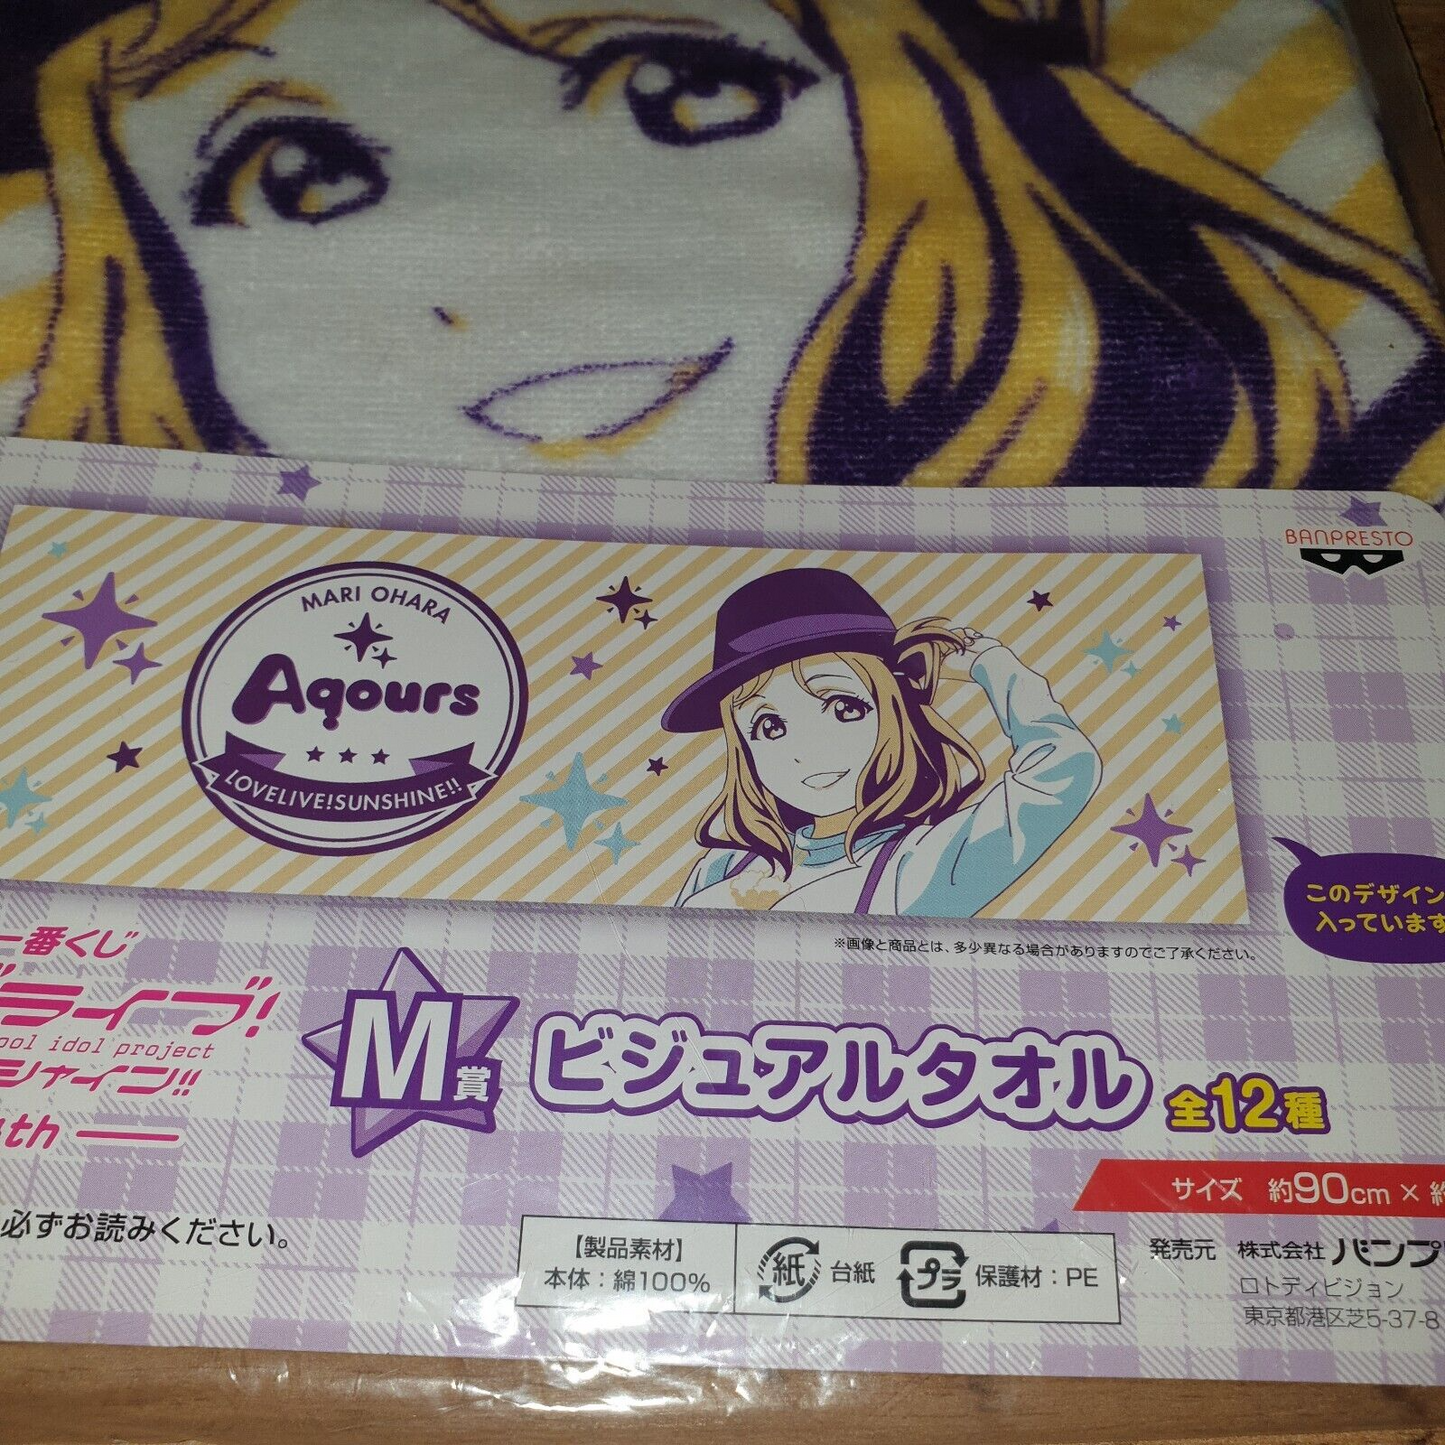 Love Live! Sunshine Aqours 4th Anniversary Mari Ohara Display Towel